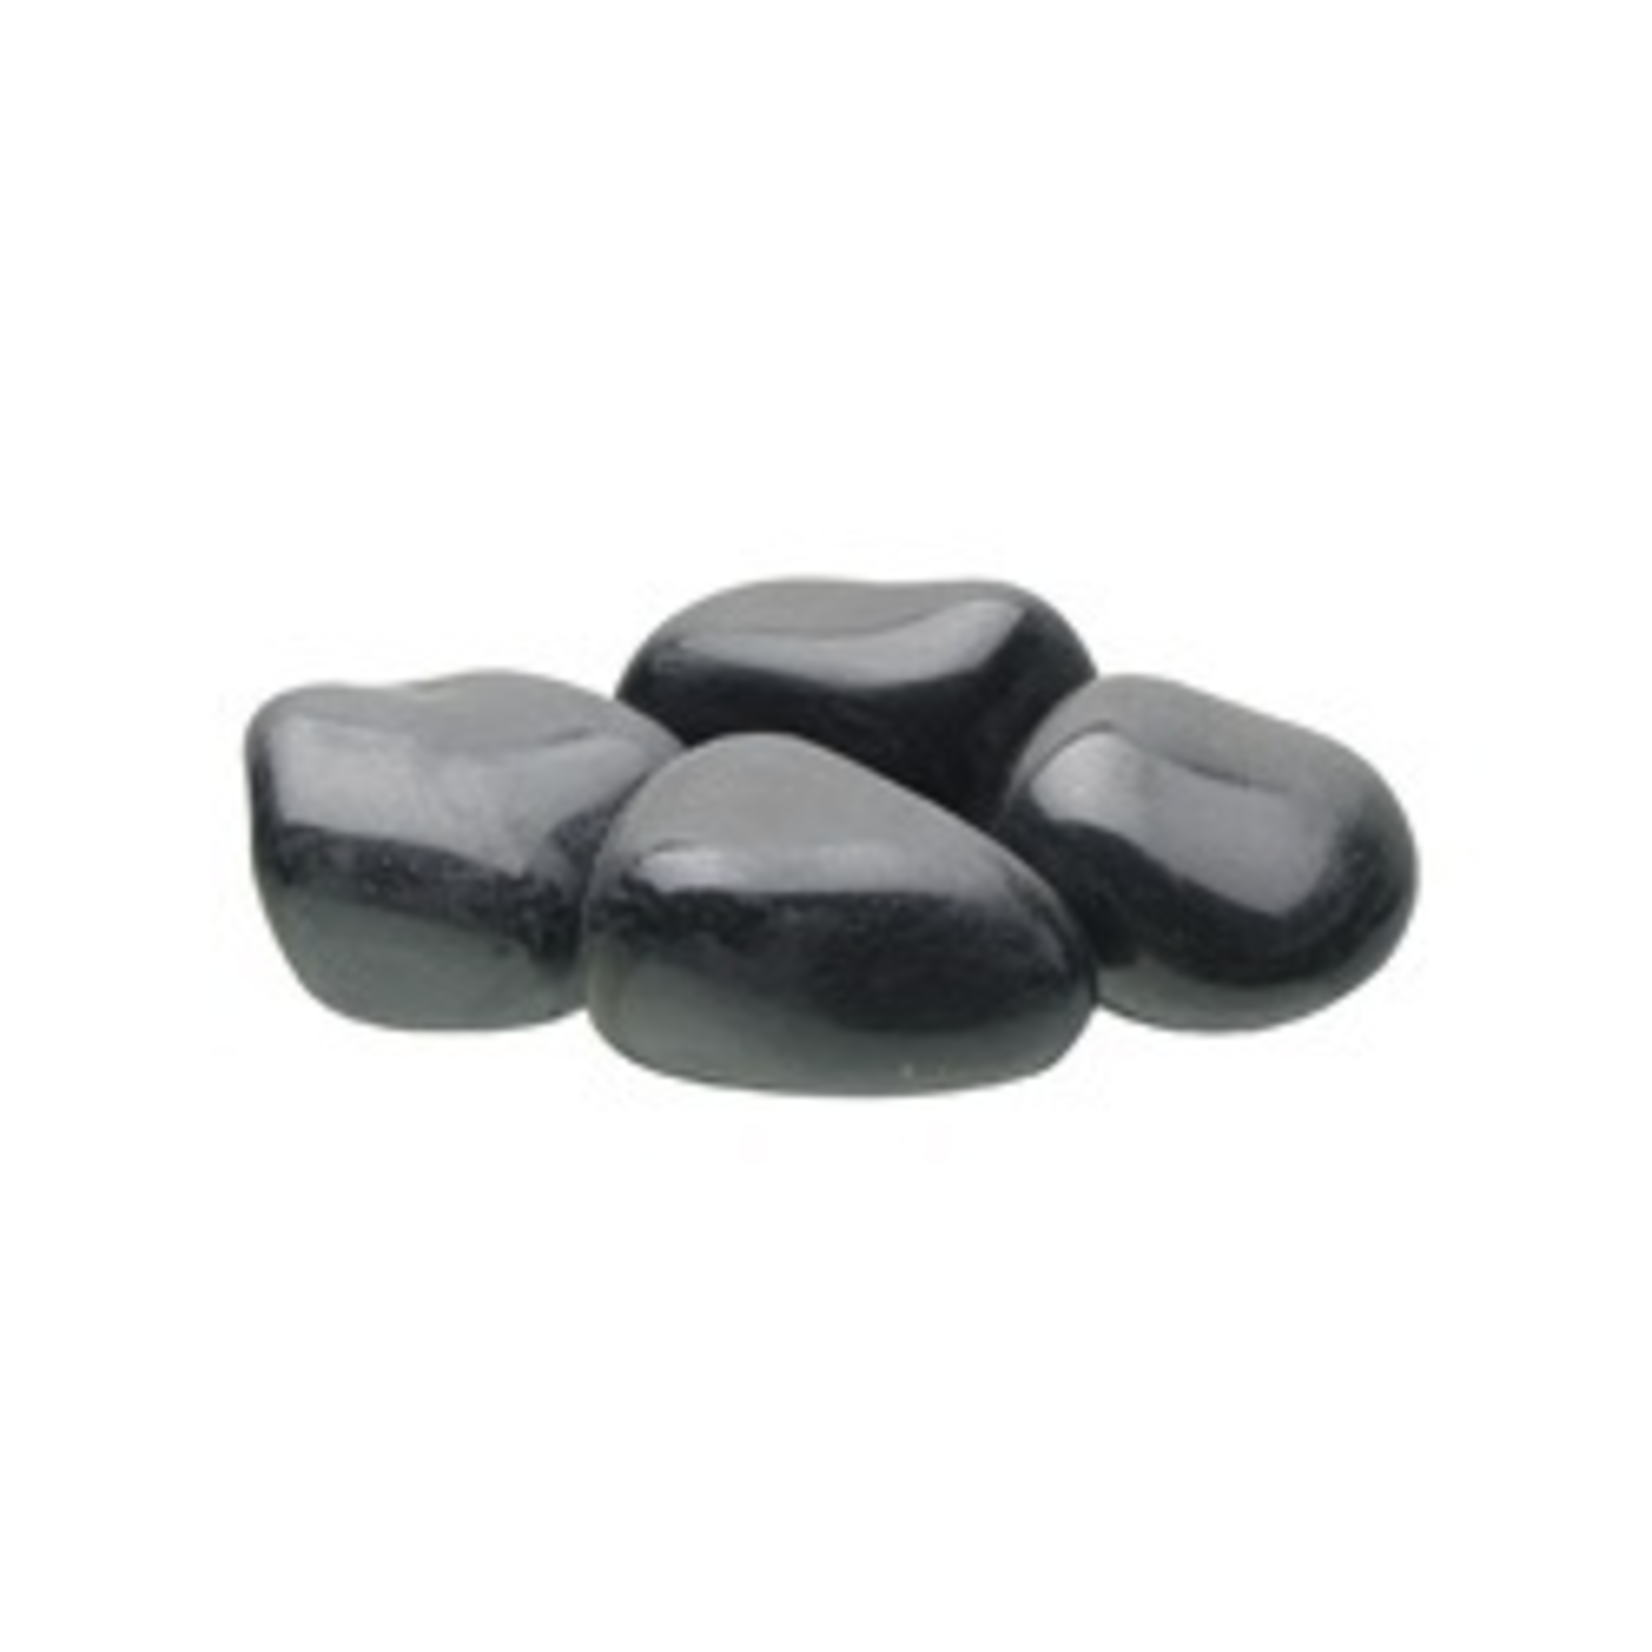 FLUVAL (W) FL Plshd Blk Agate Stone 40-50mm,700g